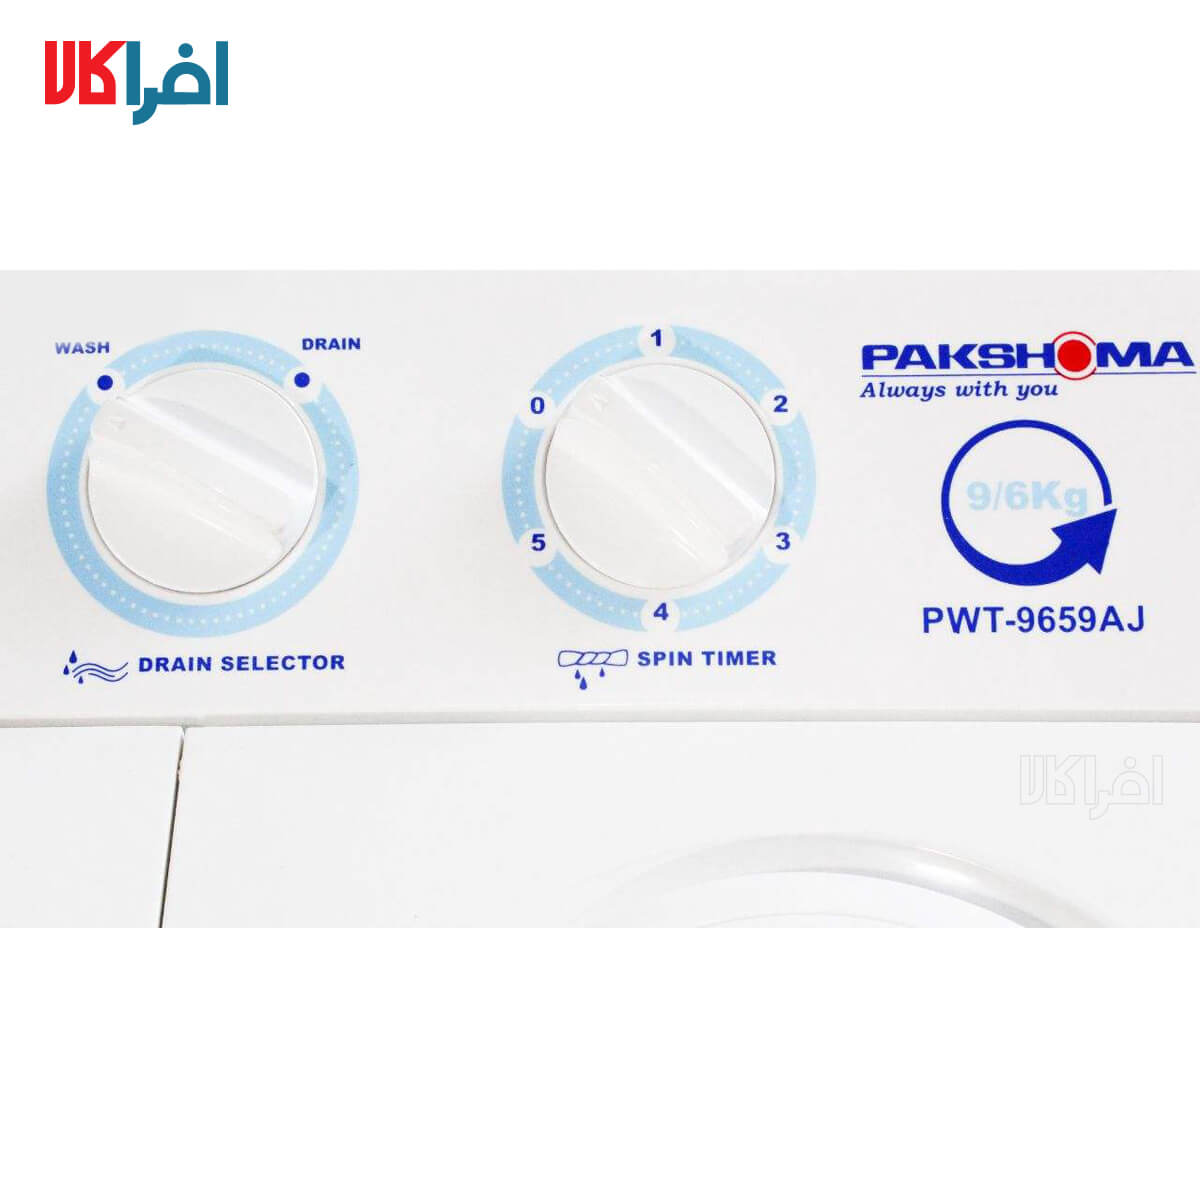 افرا کالا - قیمت و مشخصات کامل ماشین لباسشویی پاکشوما مدل PWT ...